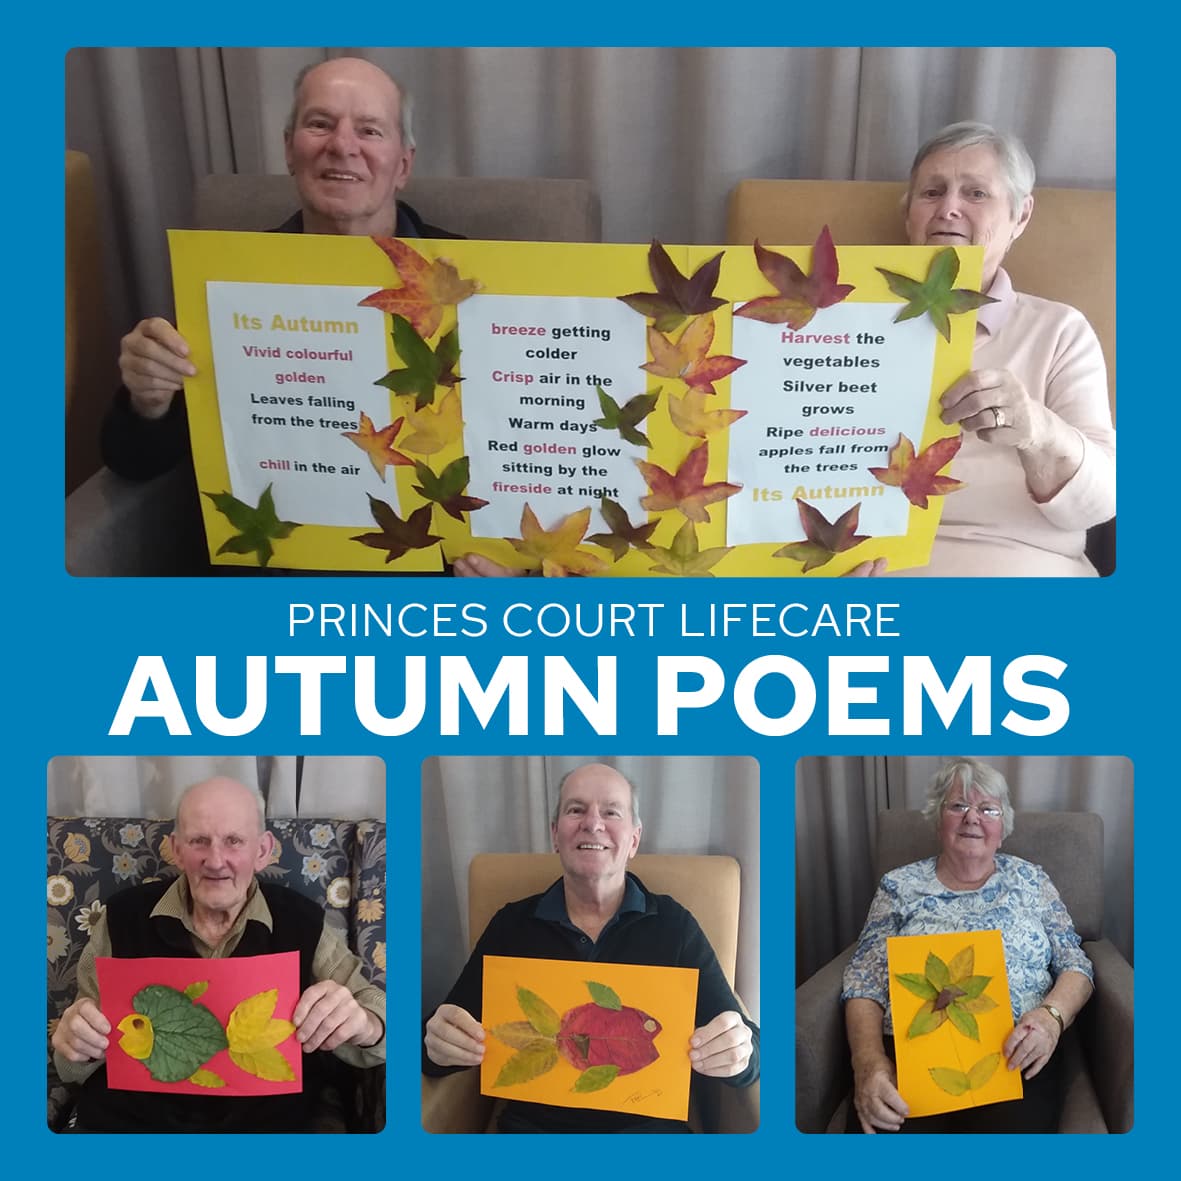 ​Autumn poems by Princes Court Lifecare dementia patients